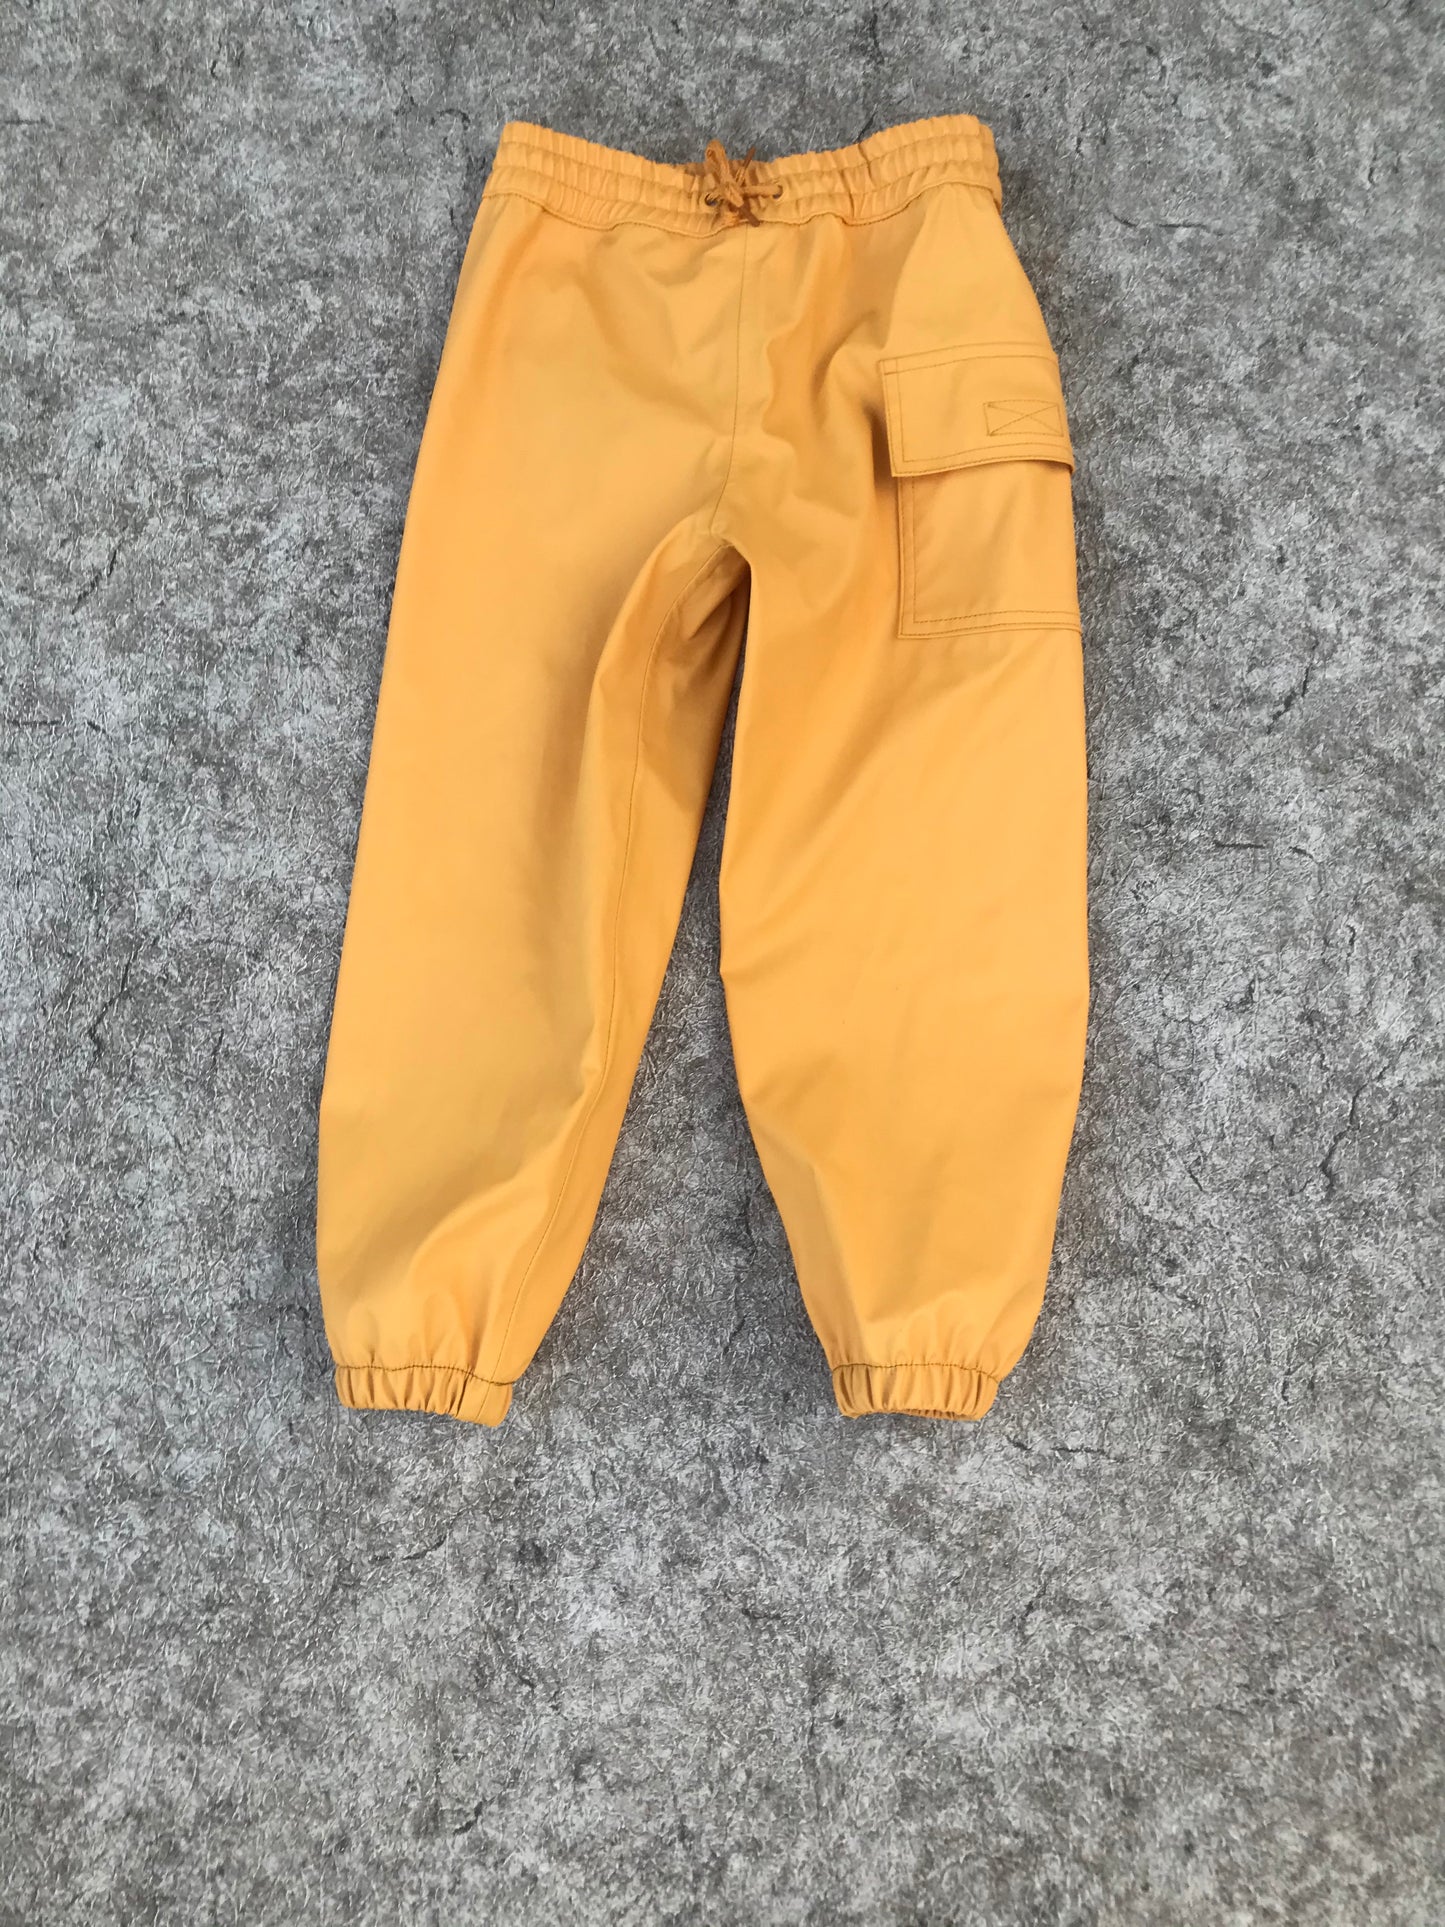 Rain Pants Child Size 4 Hatley Lemon Yellow Excellent